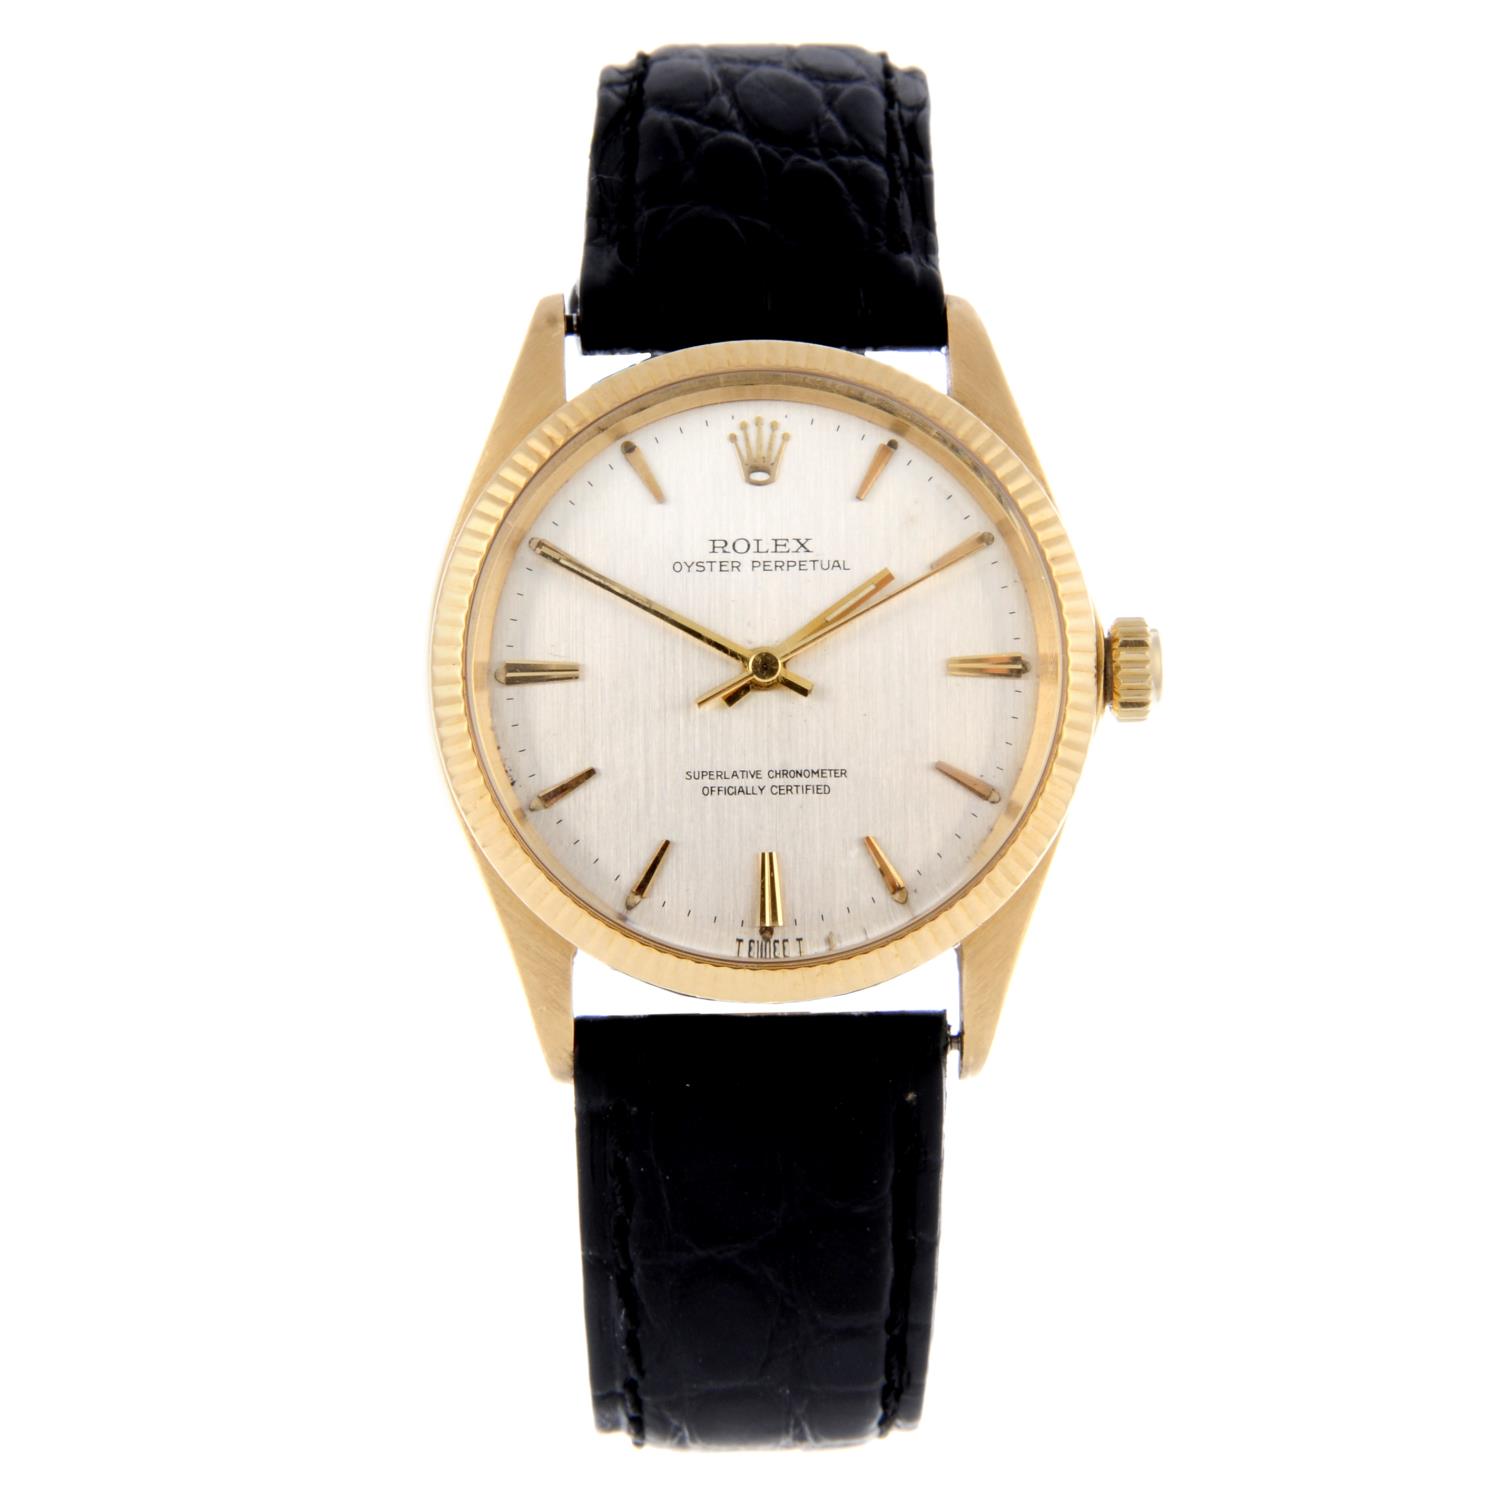 ROLEX - a gentleman's Oyster Perpetual wrist watch.